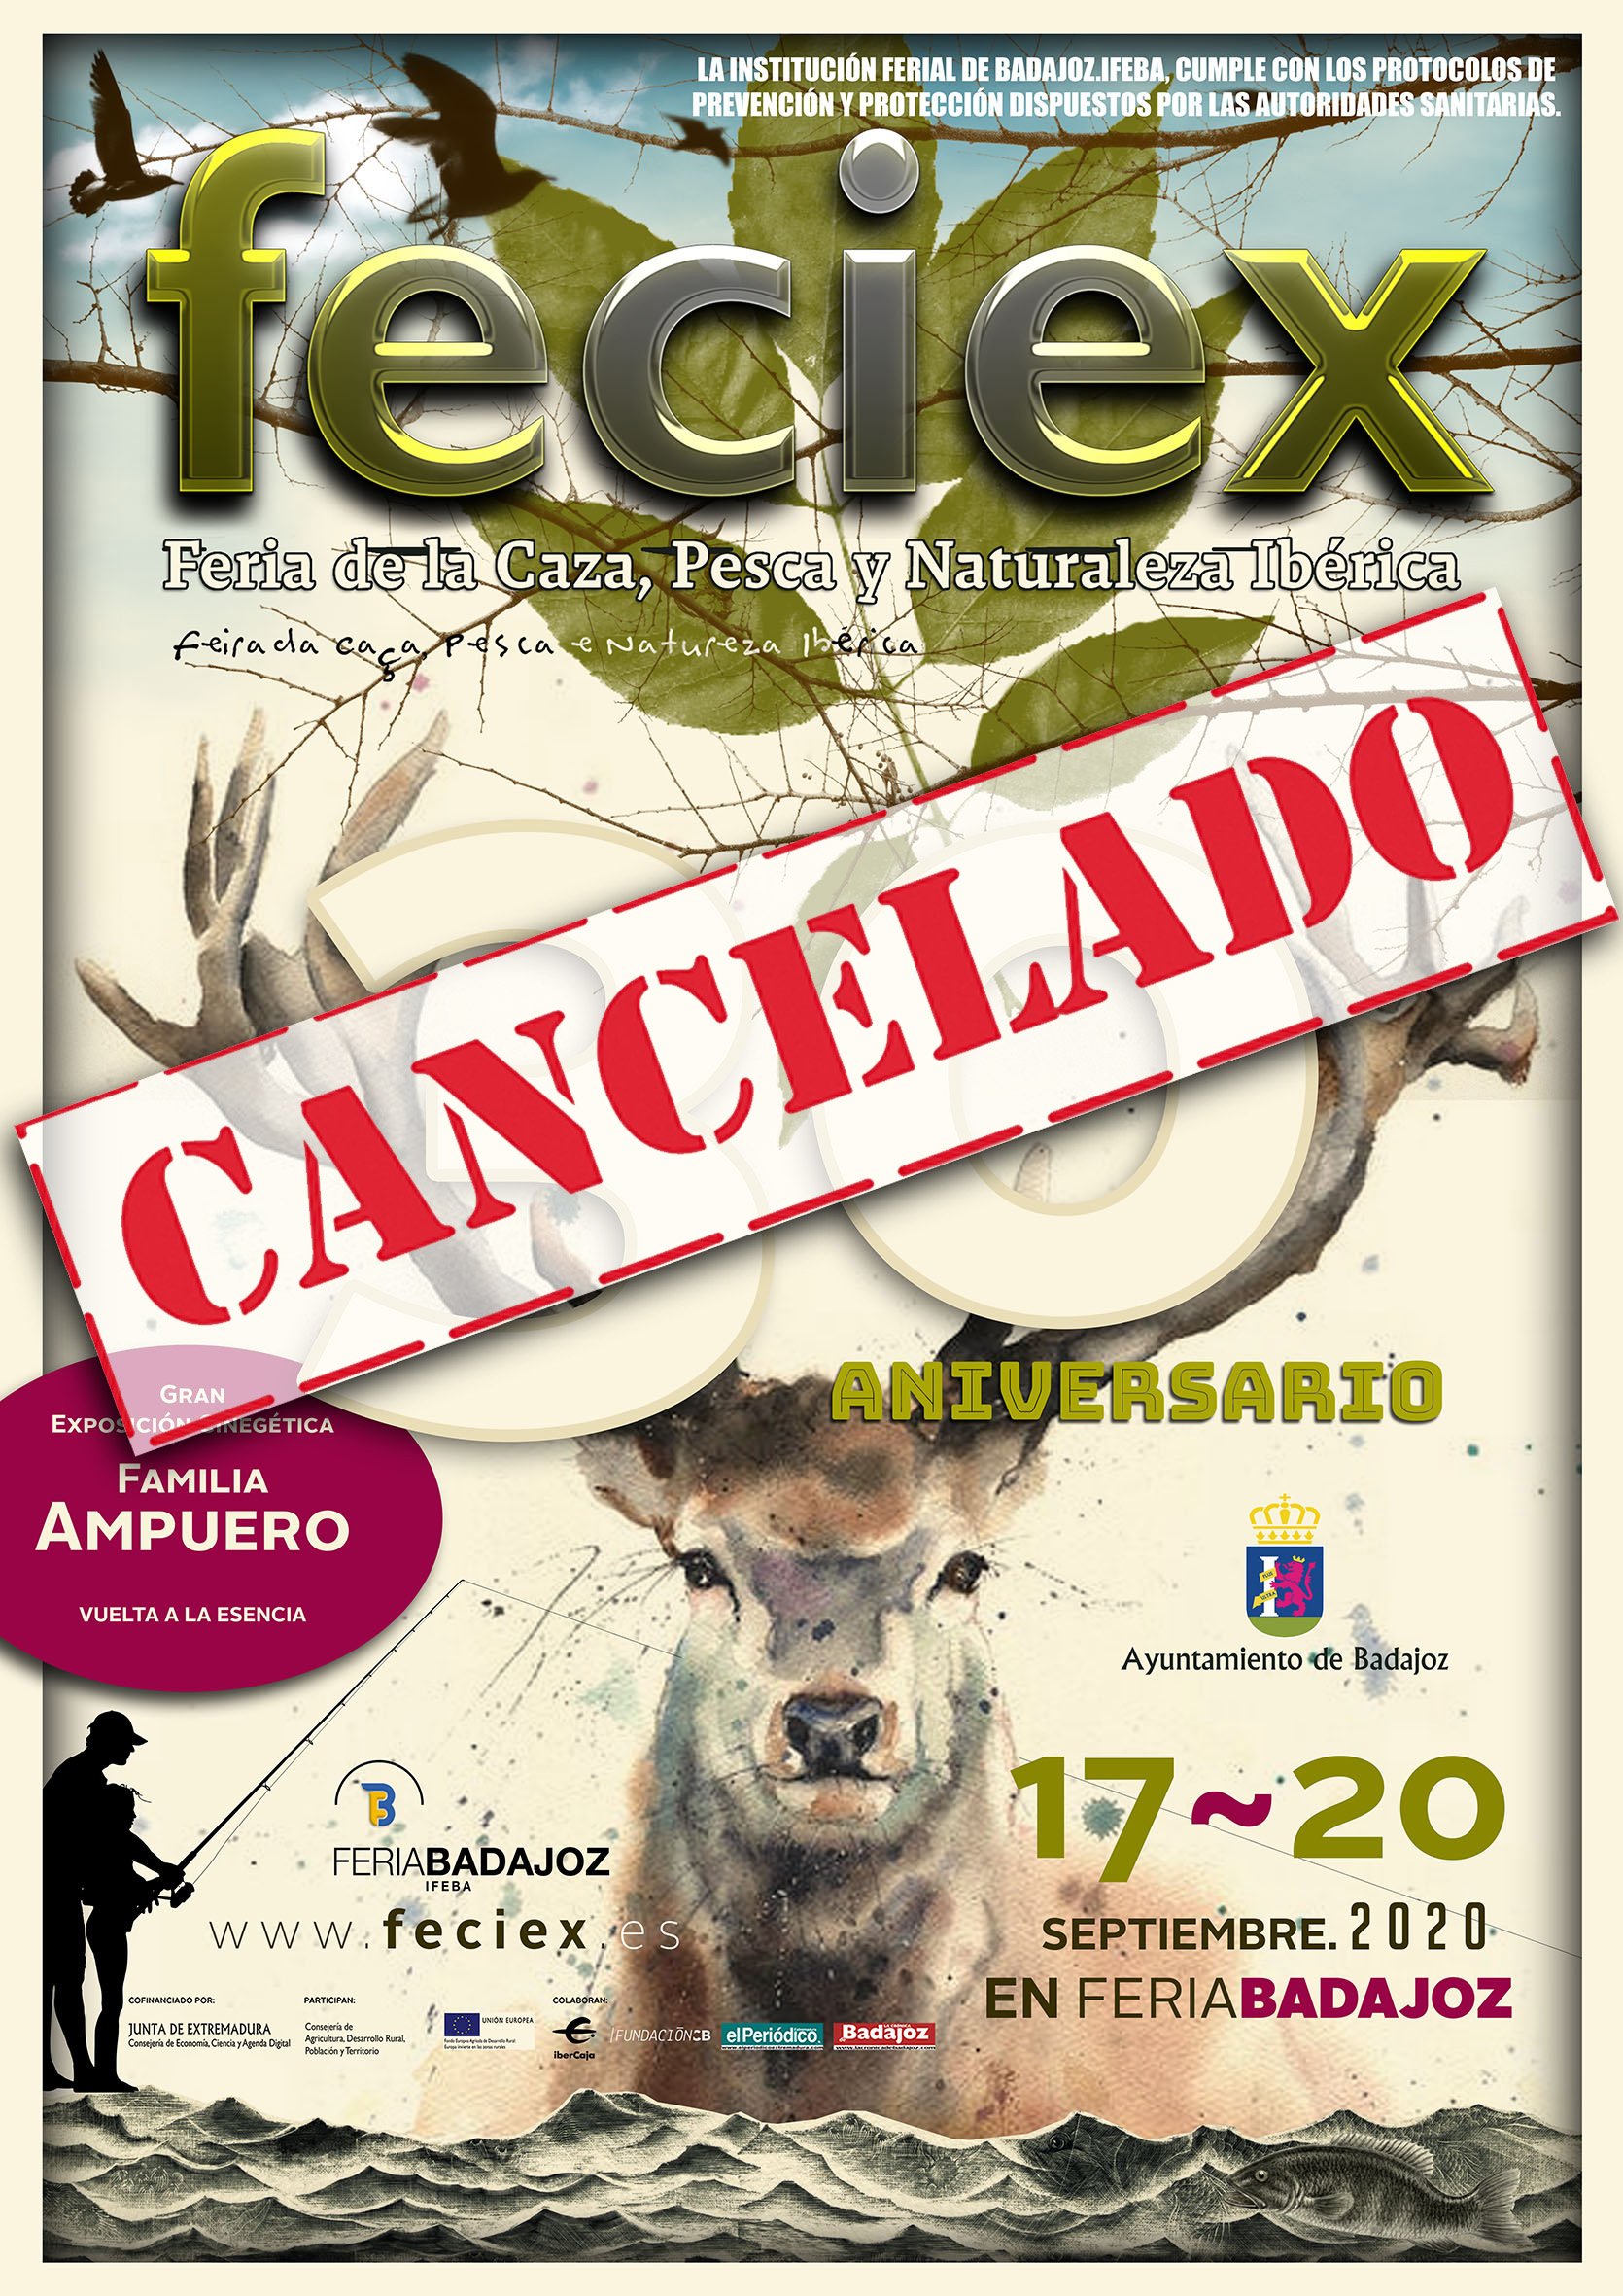 Cancelada la XXX edición de FECIEX